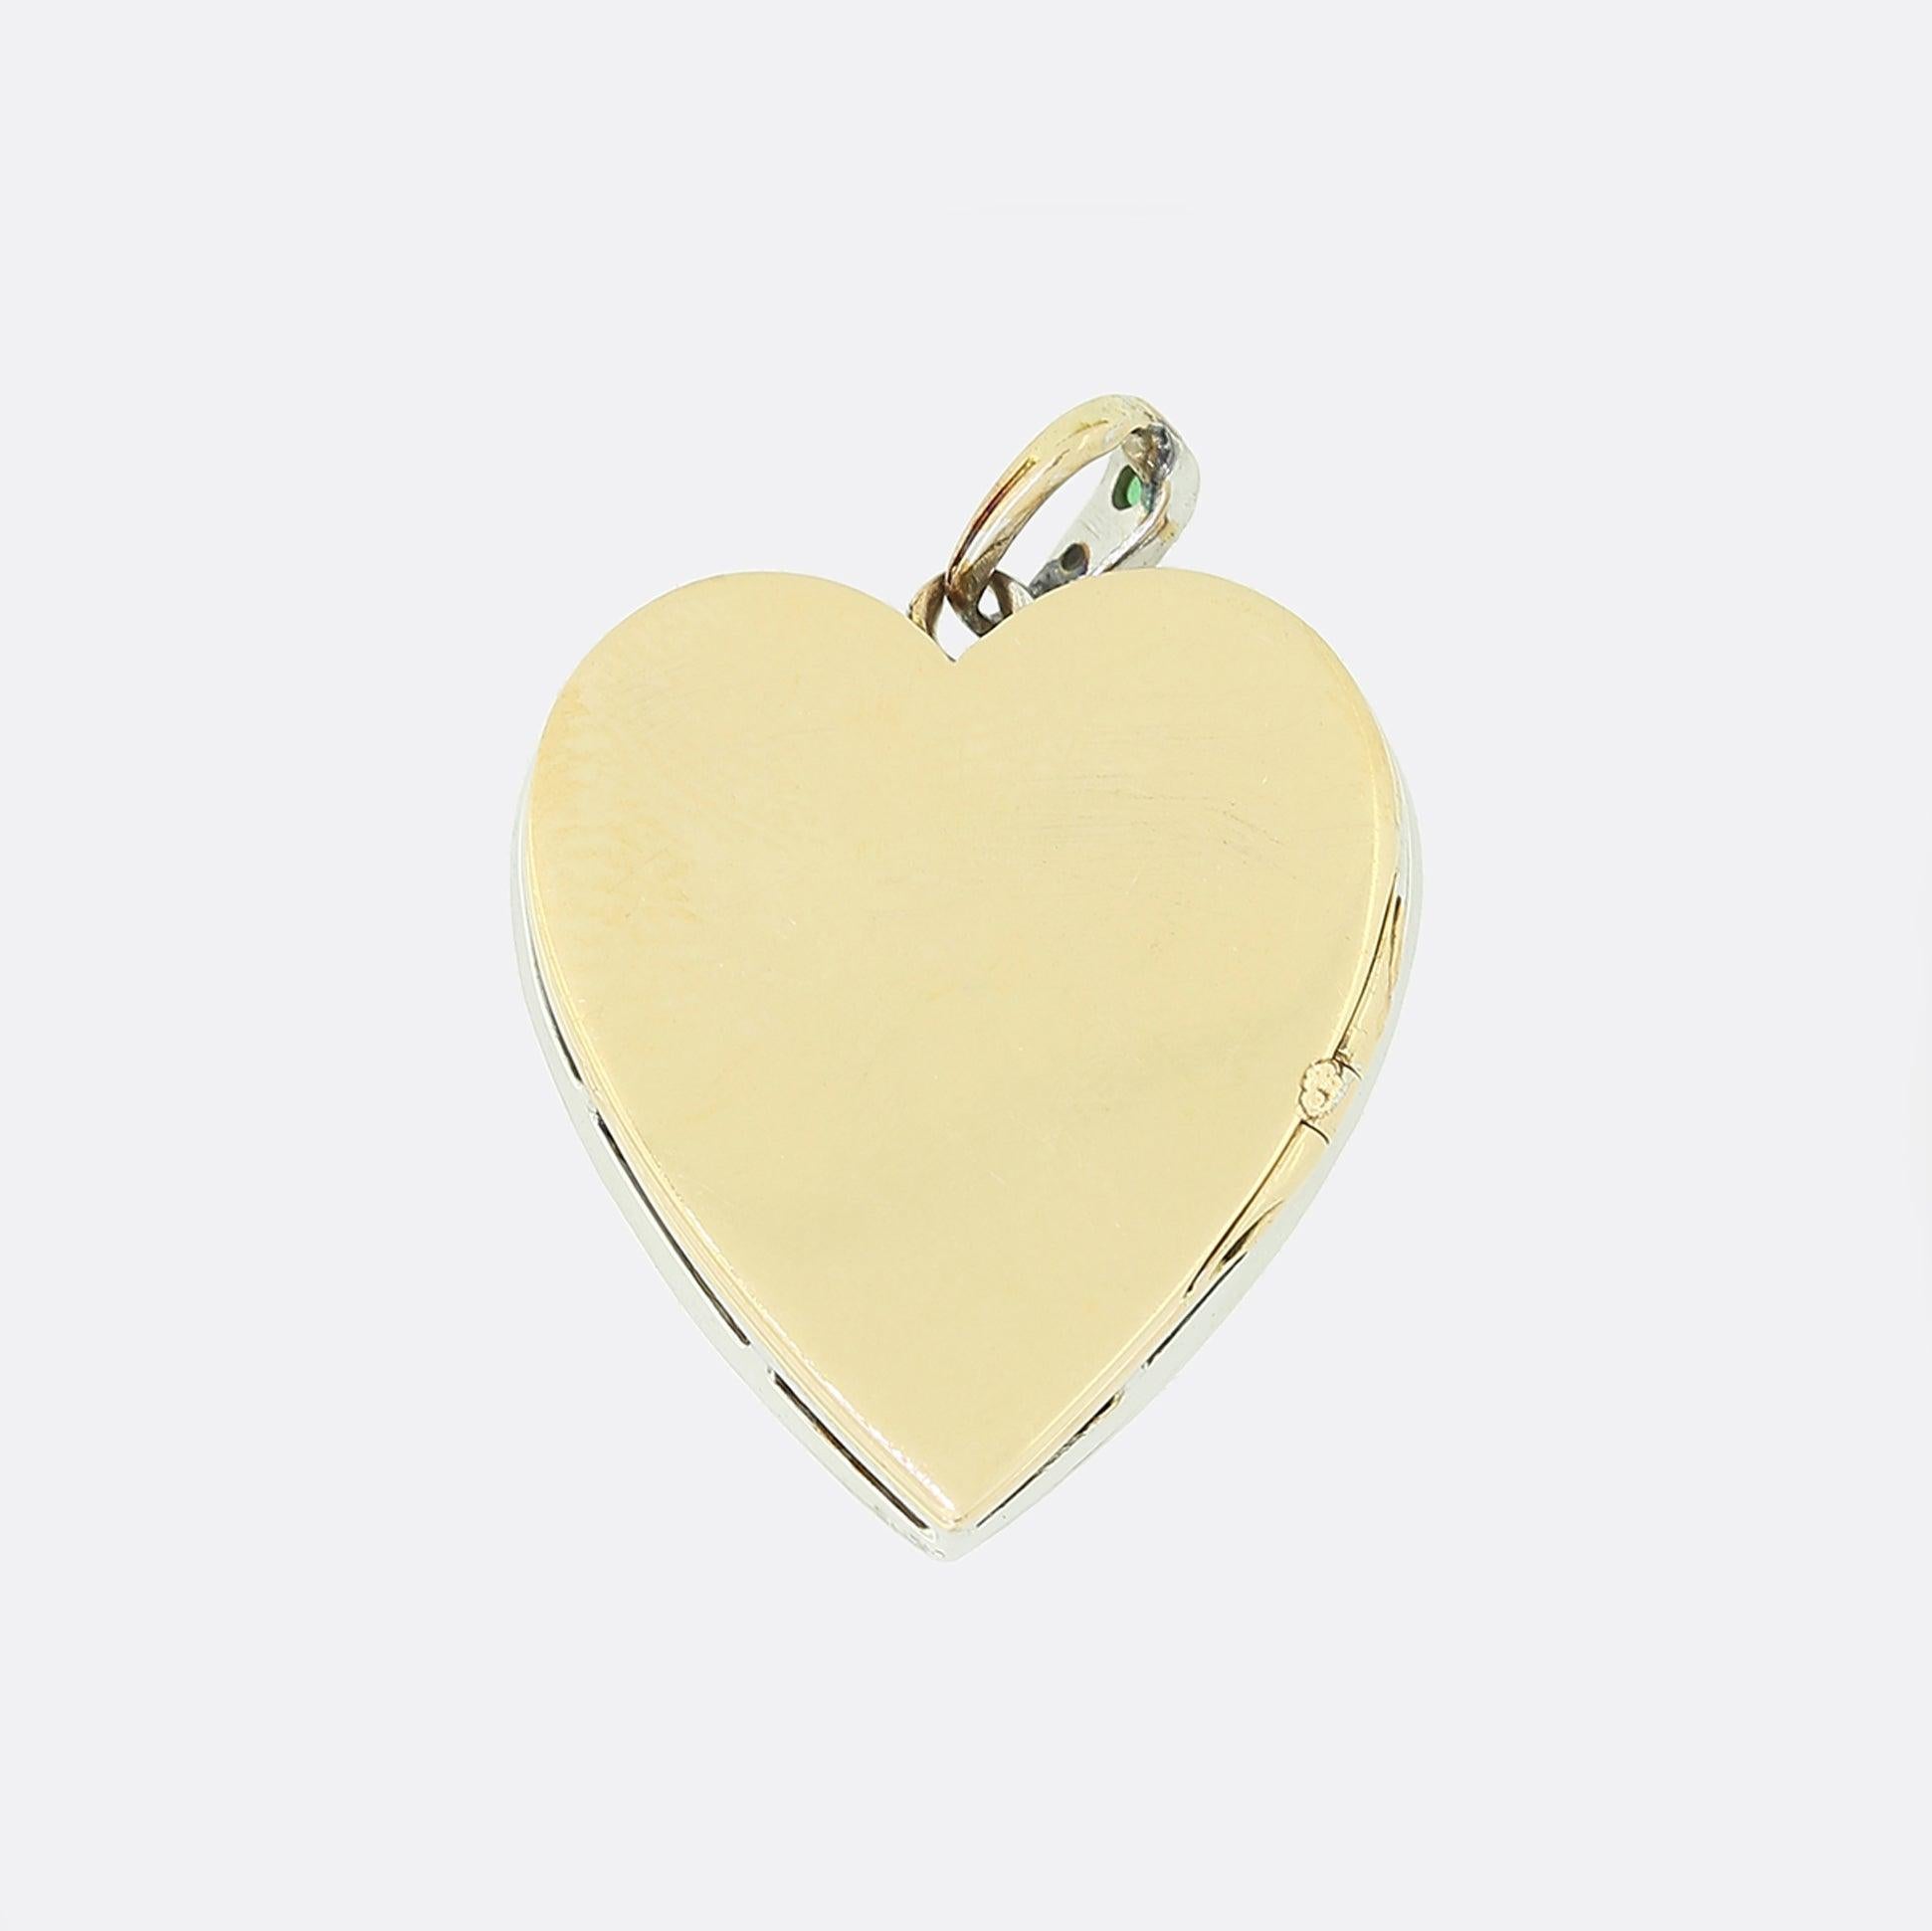 Il s'agit d'un charmant pendentif en forme de cœur en or jaune 18ct, orné d'émeraudes et de diamants. Le pendentif présente une émeraude centrale de taille carrée, entourée d'un ensemble de diamants de taille ancienne, le tout serti dans de l'or